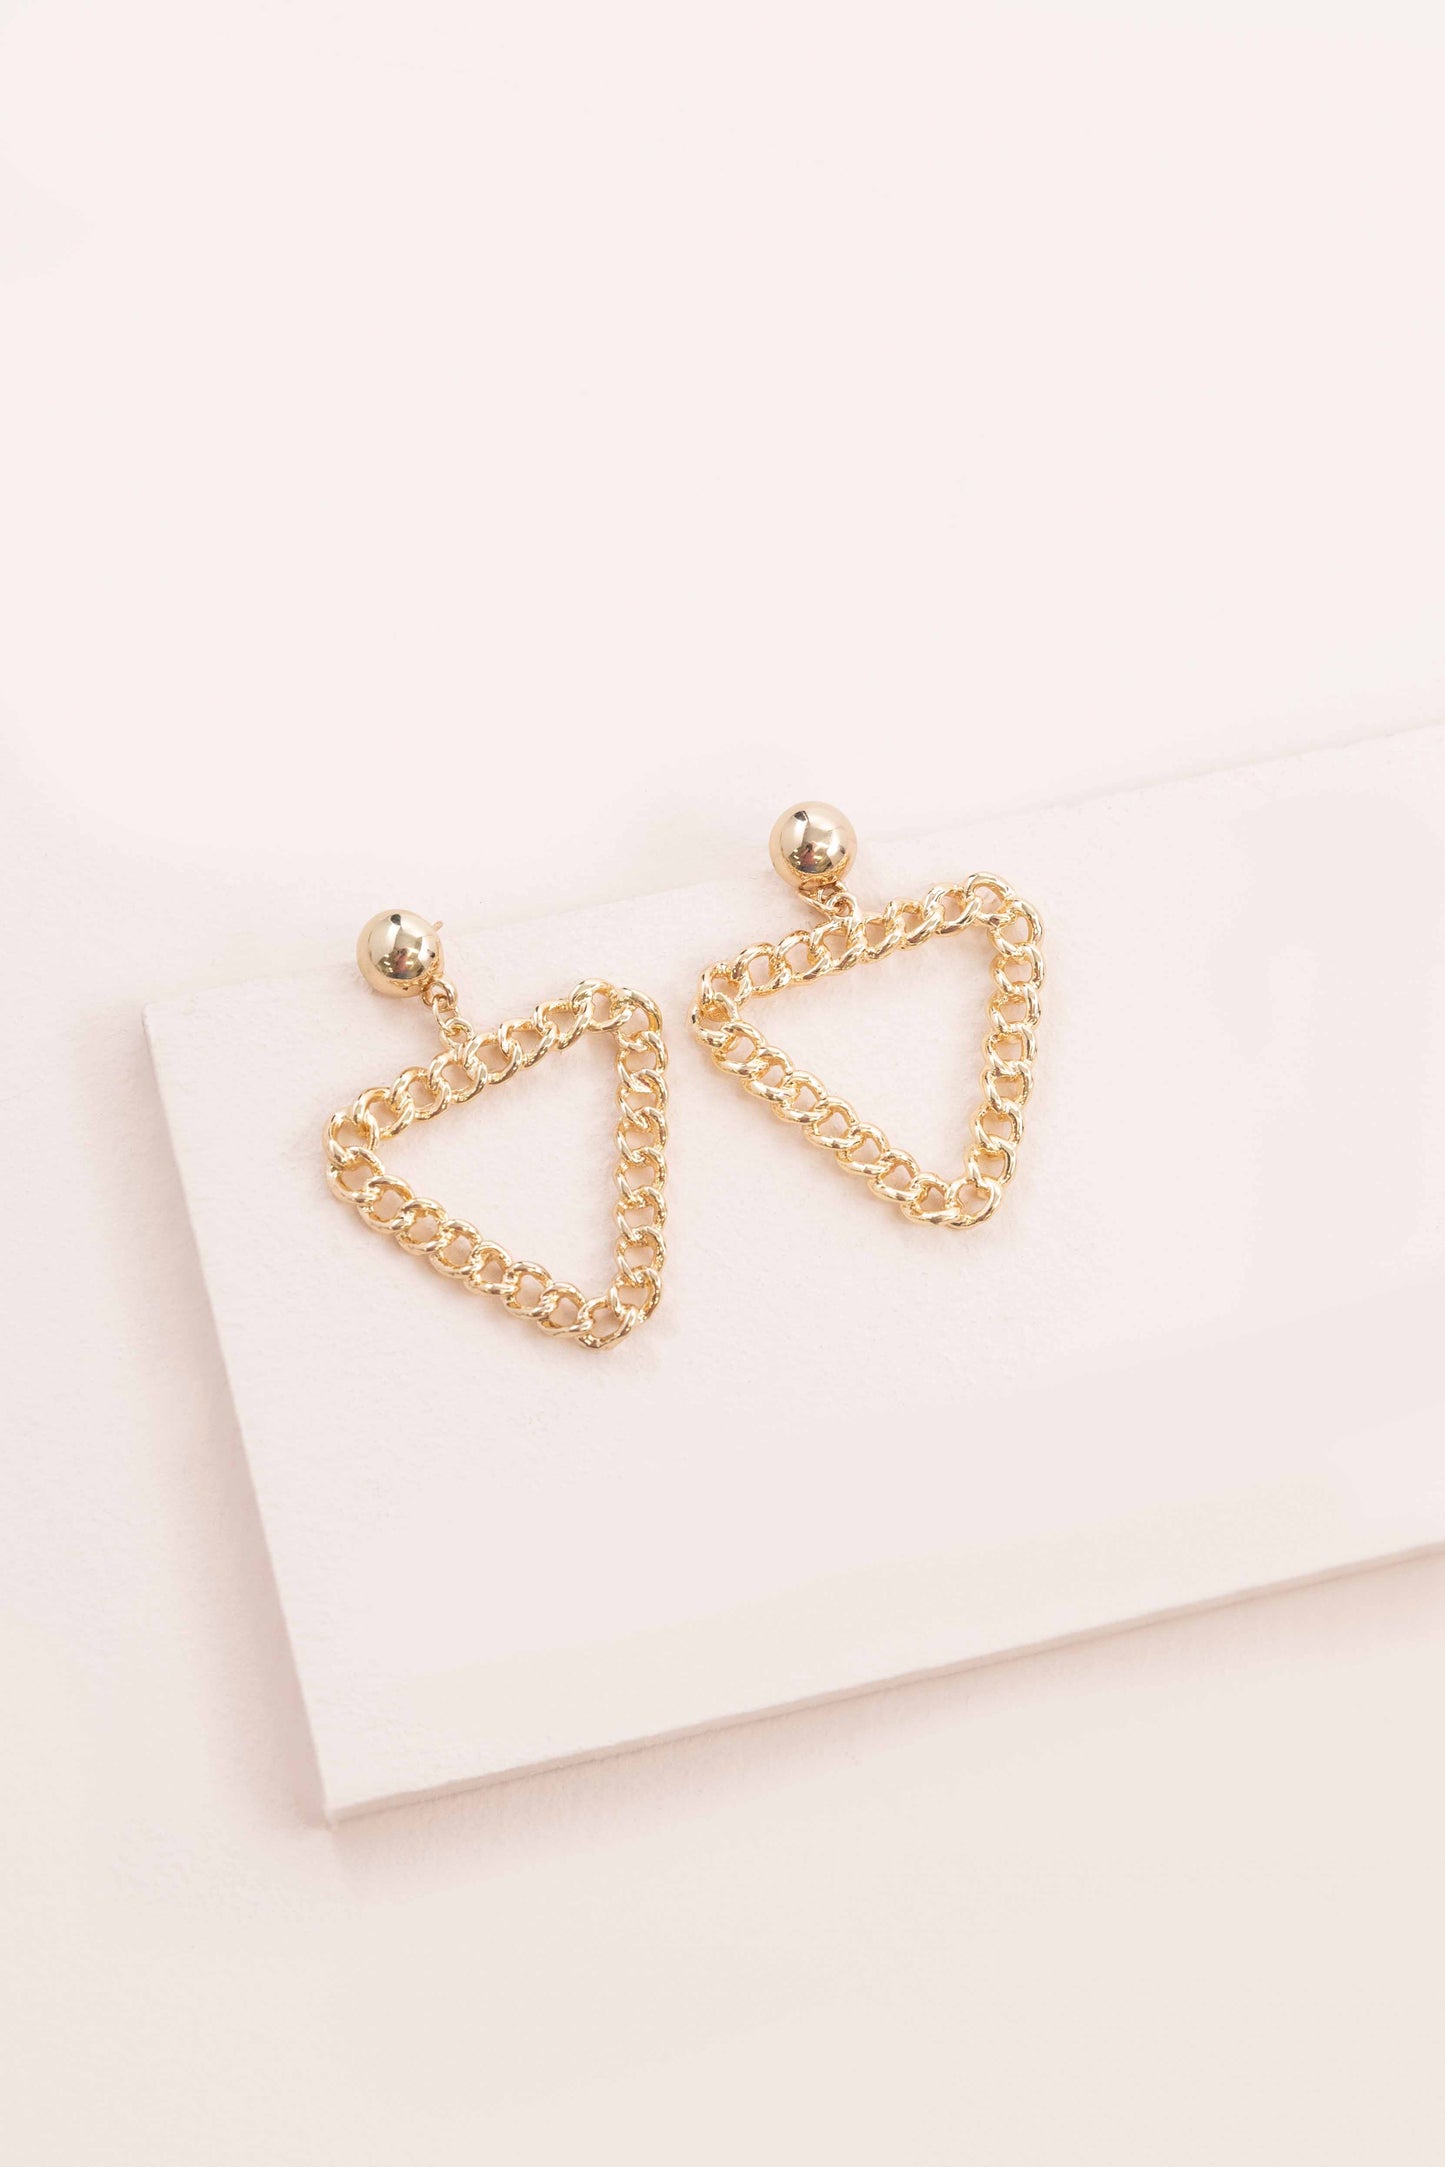 Triangle Chain Link Earrings (14K)